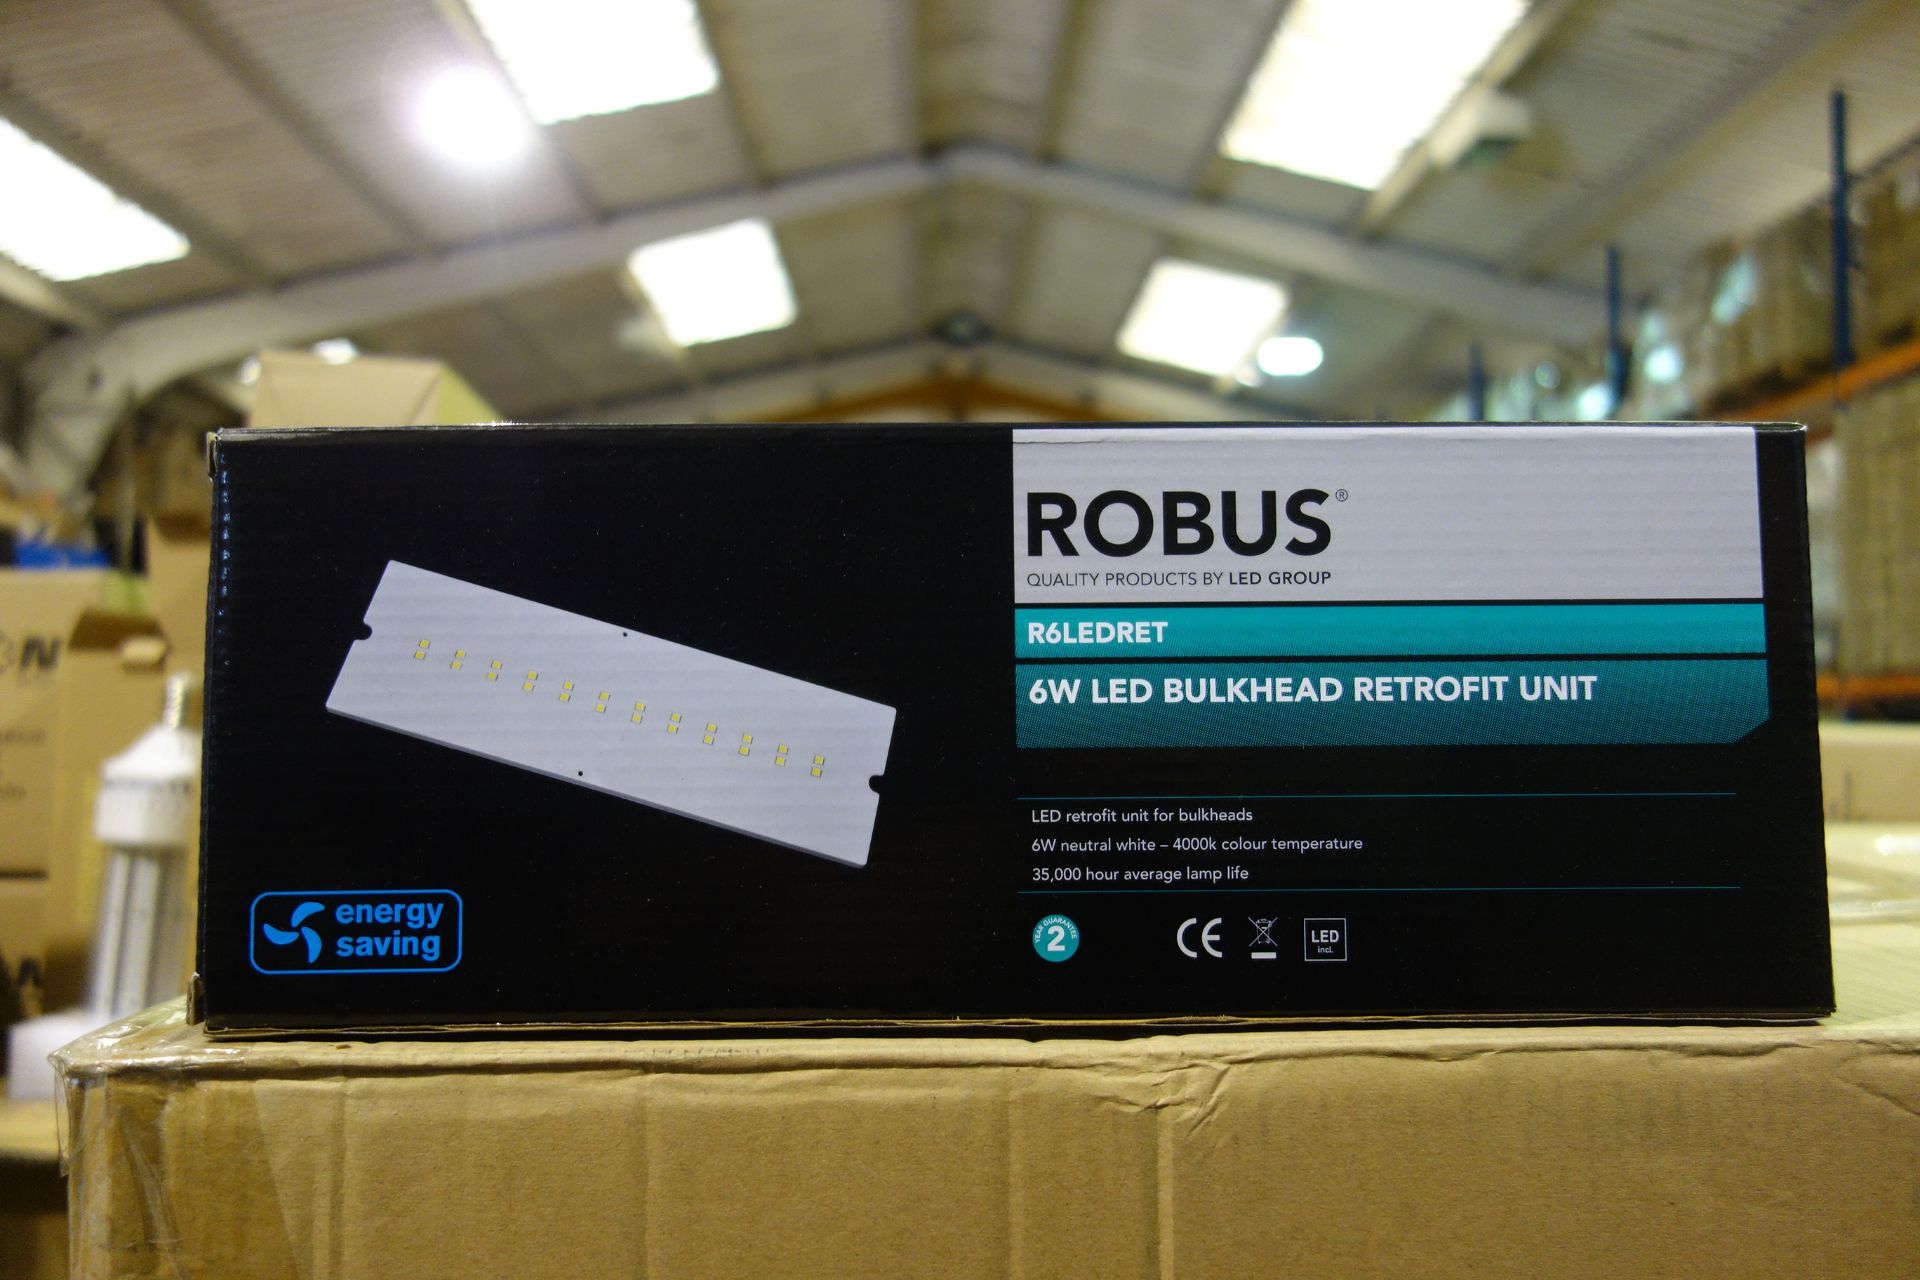 20 X Robus R6LEDRET 6W LED Bulkhead Retofit Unit Neutral White 4000K 35000HRS